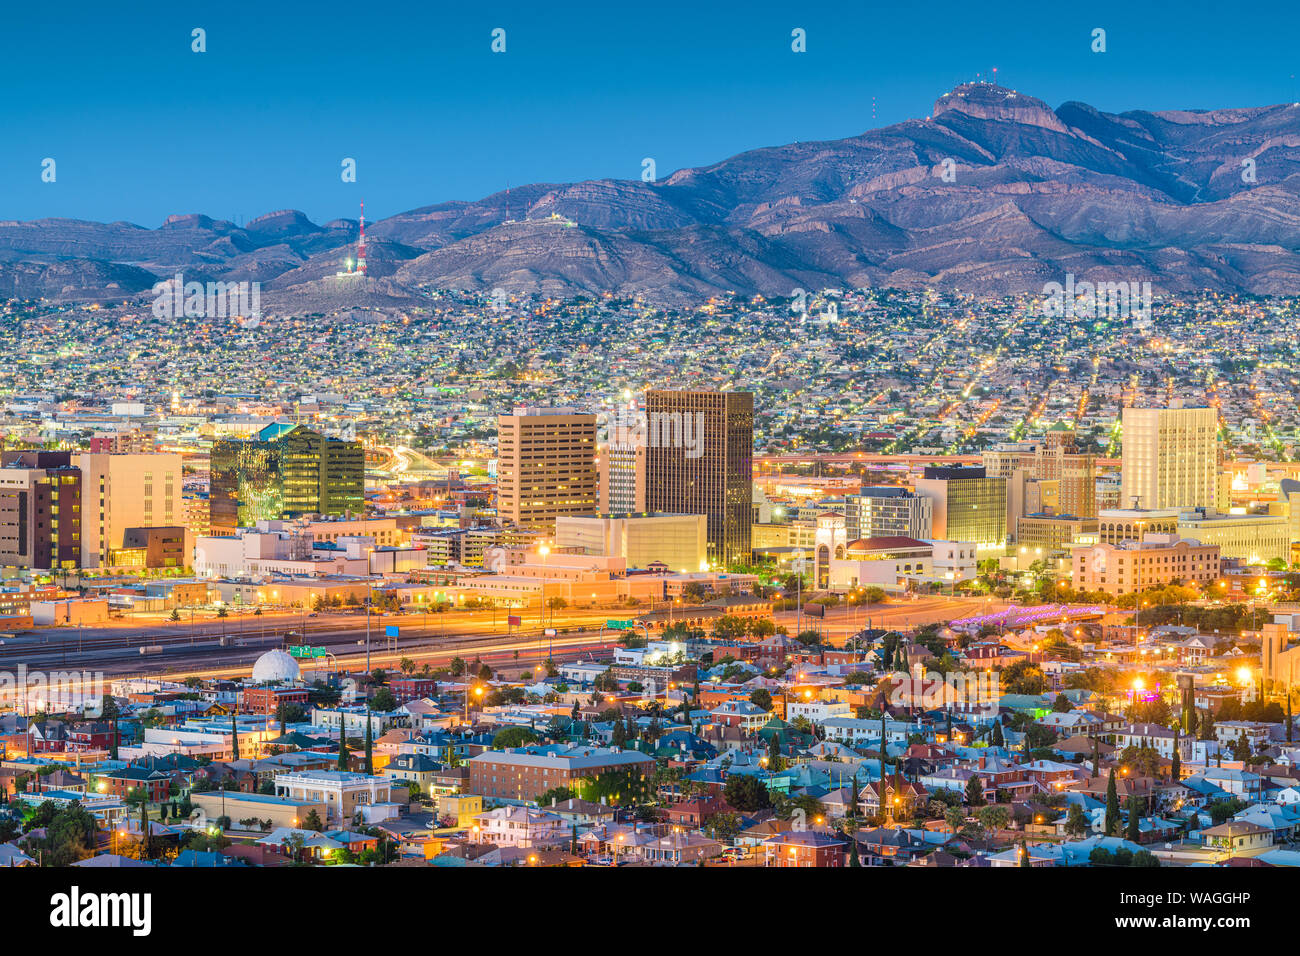 El Paso, Texas, EE.UU. el centro de la ciudad al anochecer con Juarez, México en la distancia. Foto de stock